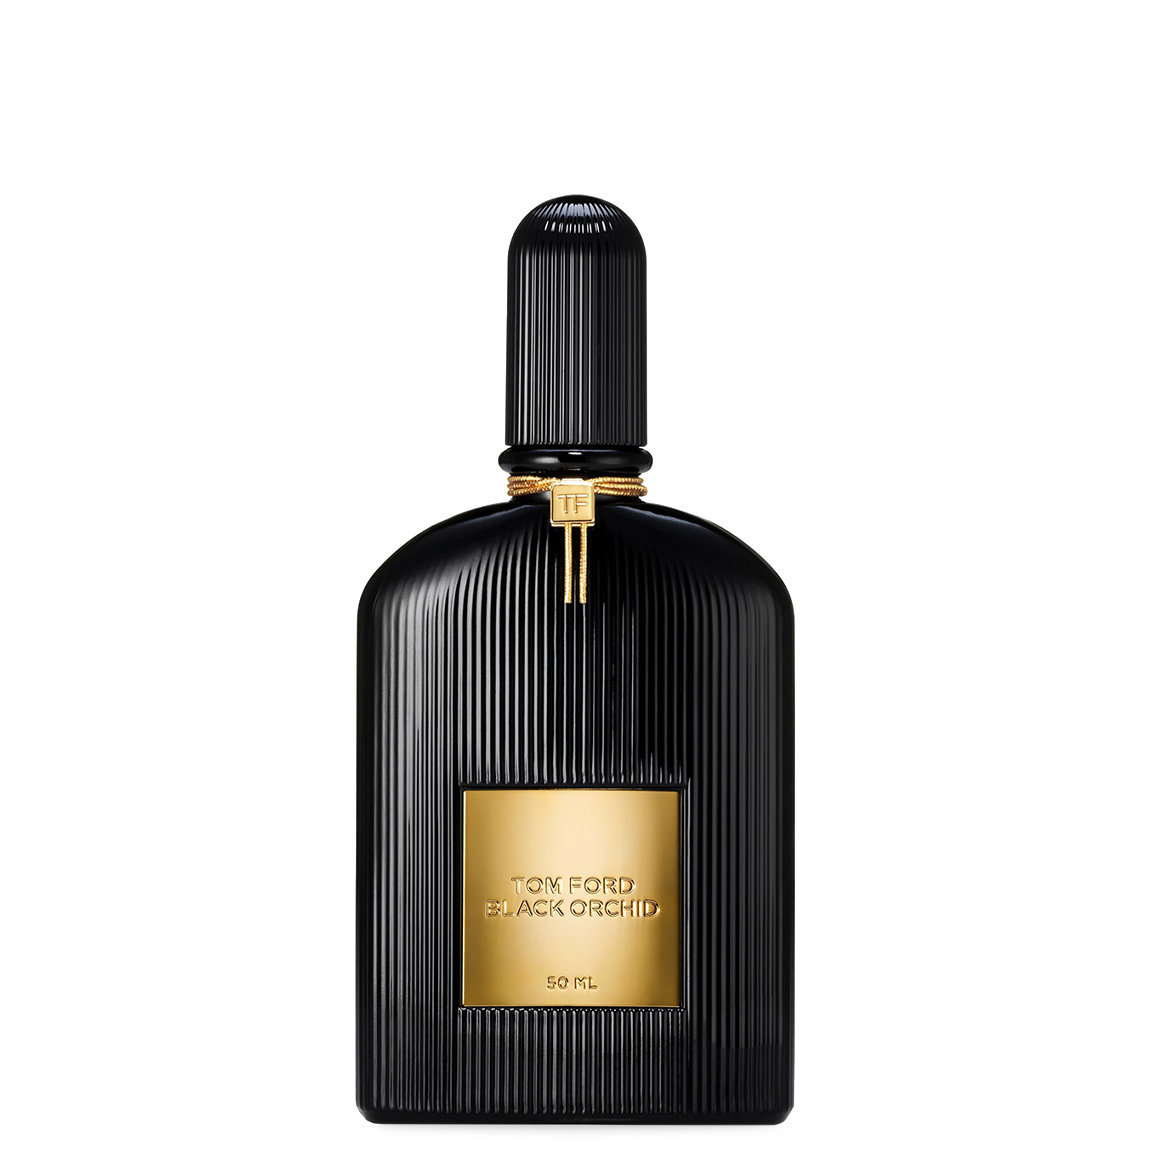 TOM FORD Black Orchid Eau de Parfum 50 ml alternative view 1 - product swatch.